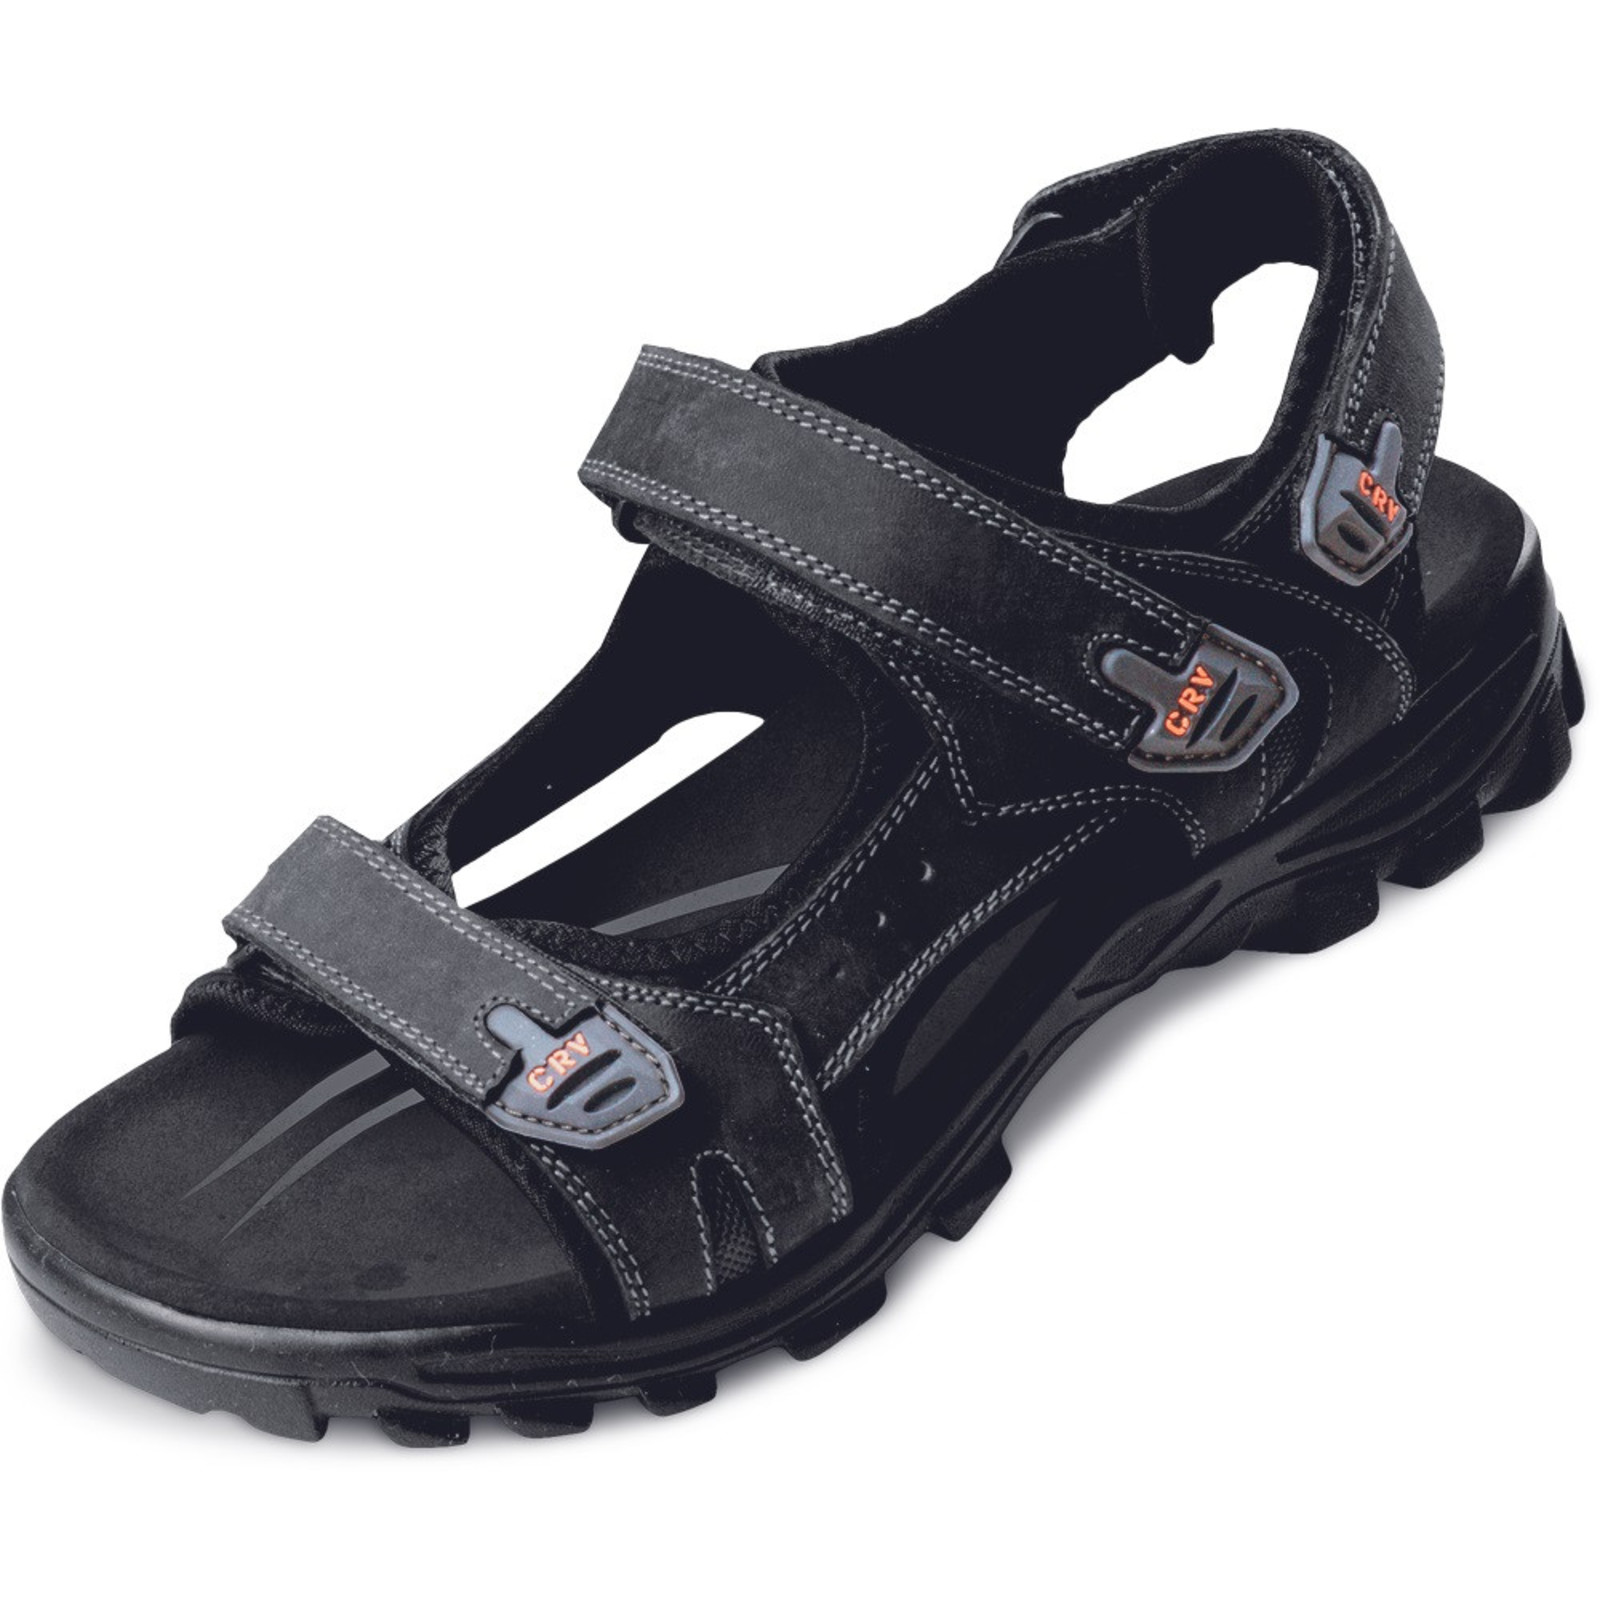 Sandále Wulik CRV pánske - veľkosť: 42, farba: čierna